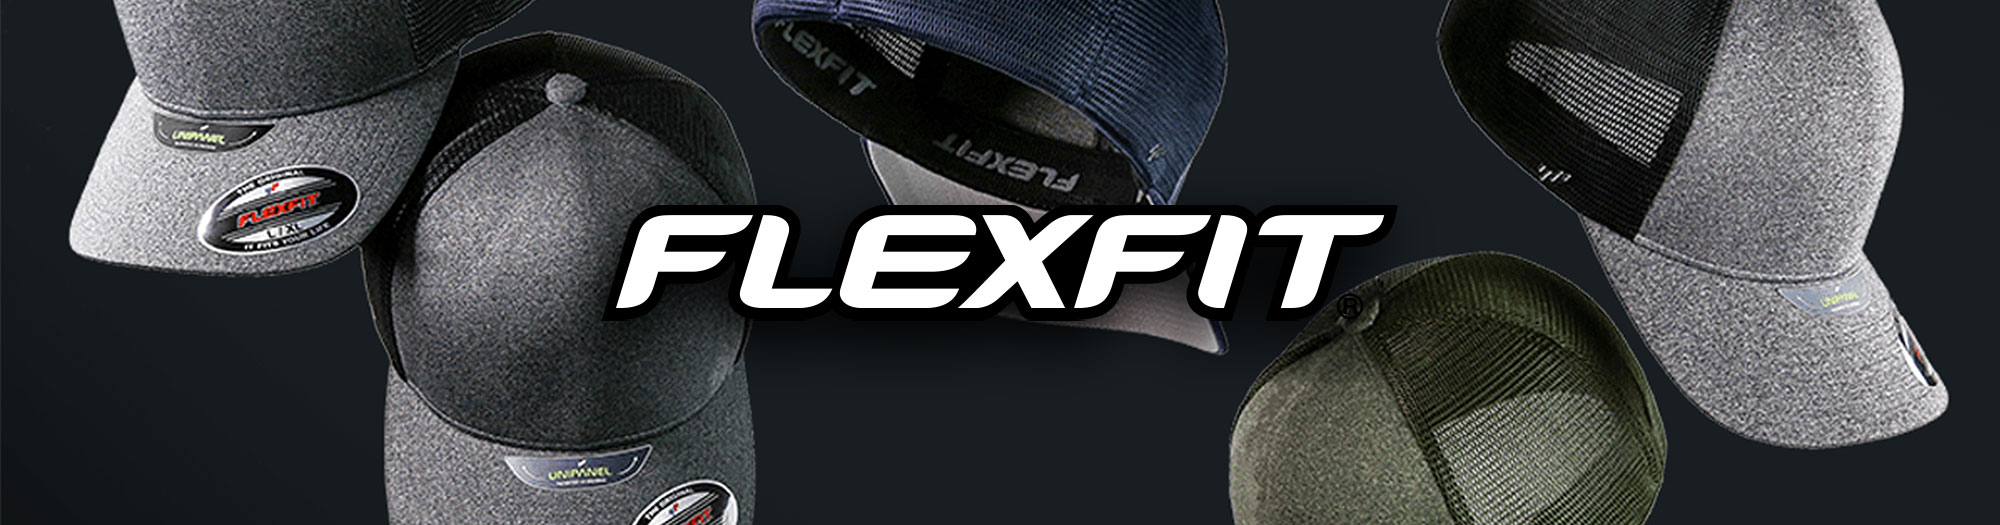 Teamsports Flexfit | Caps